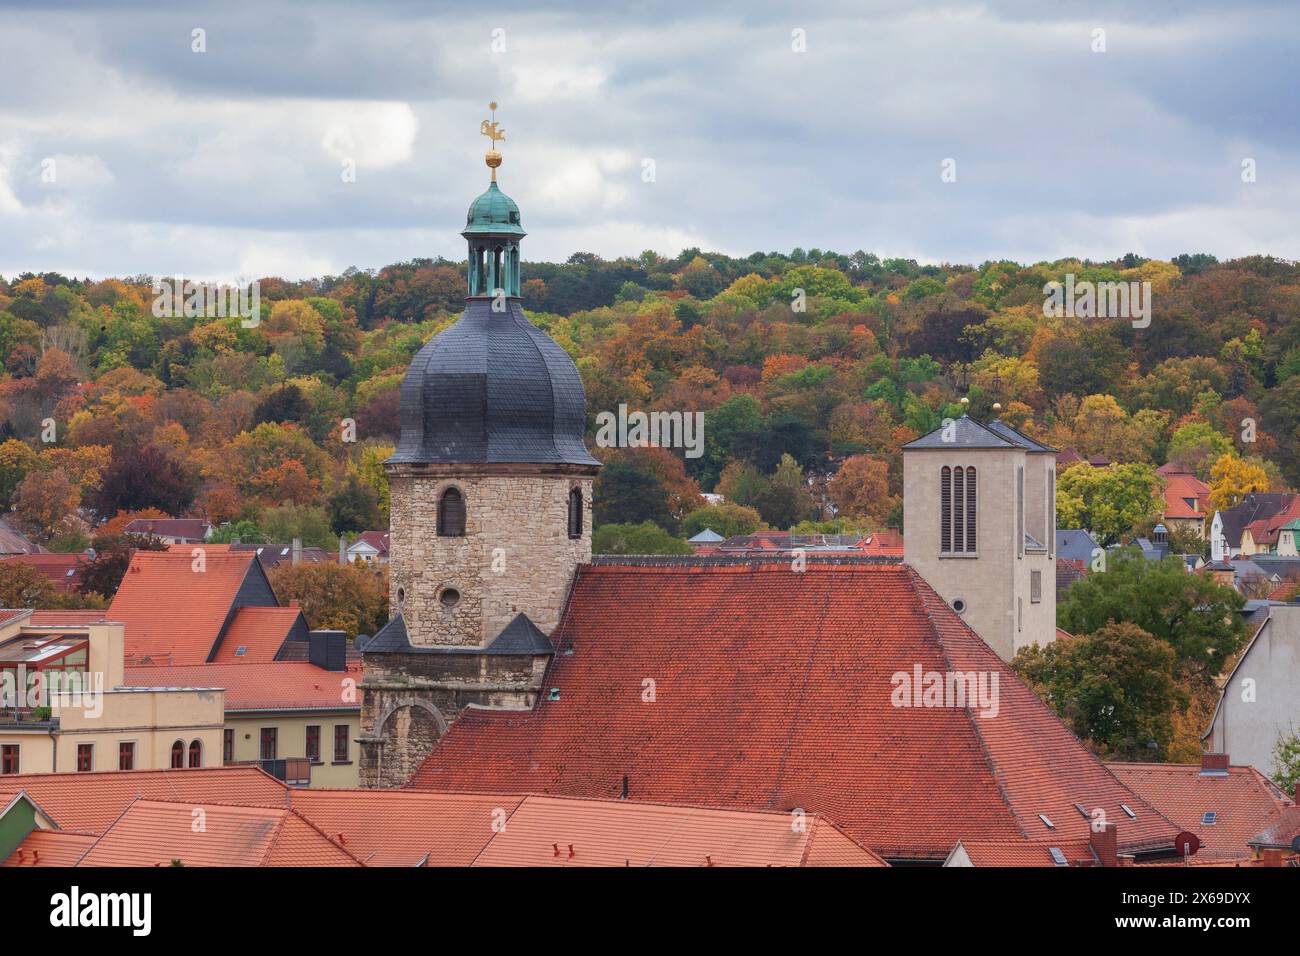 Pfarrkirche St. Crescentius, Naumburg, Sachsen-Anhalt, Deutschland, Europa Stockfoto